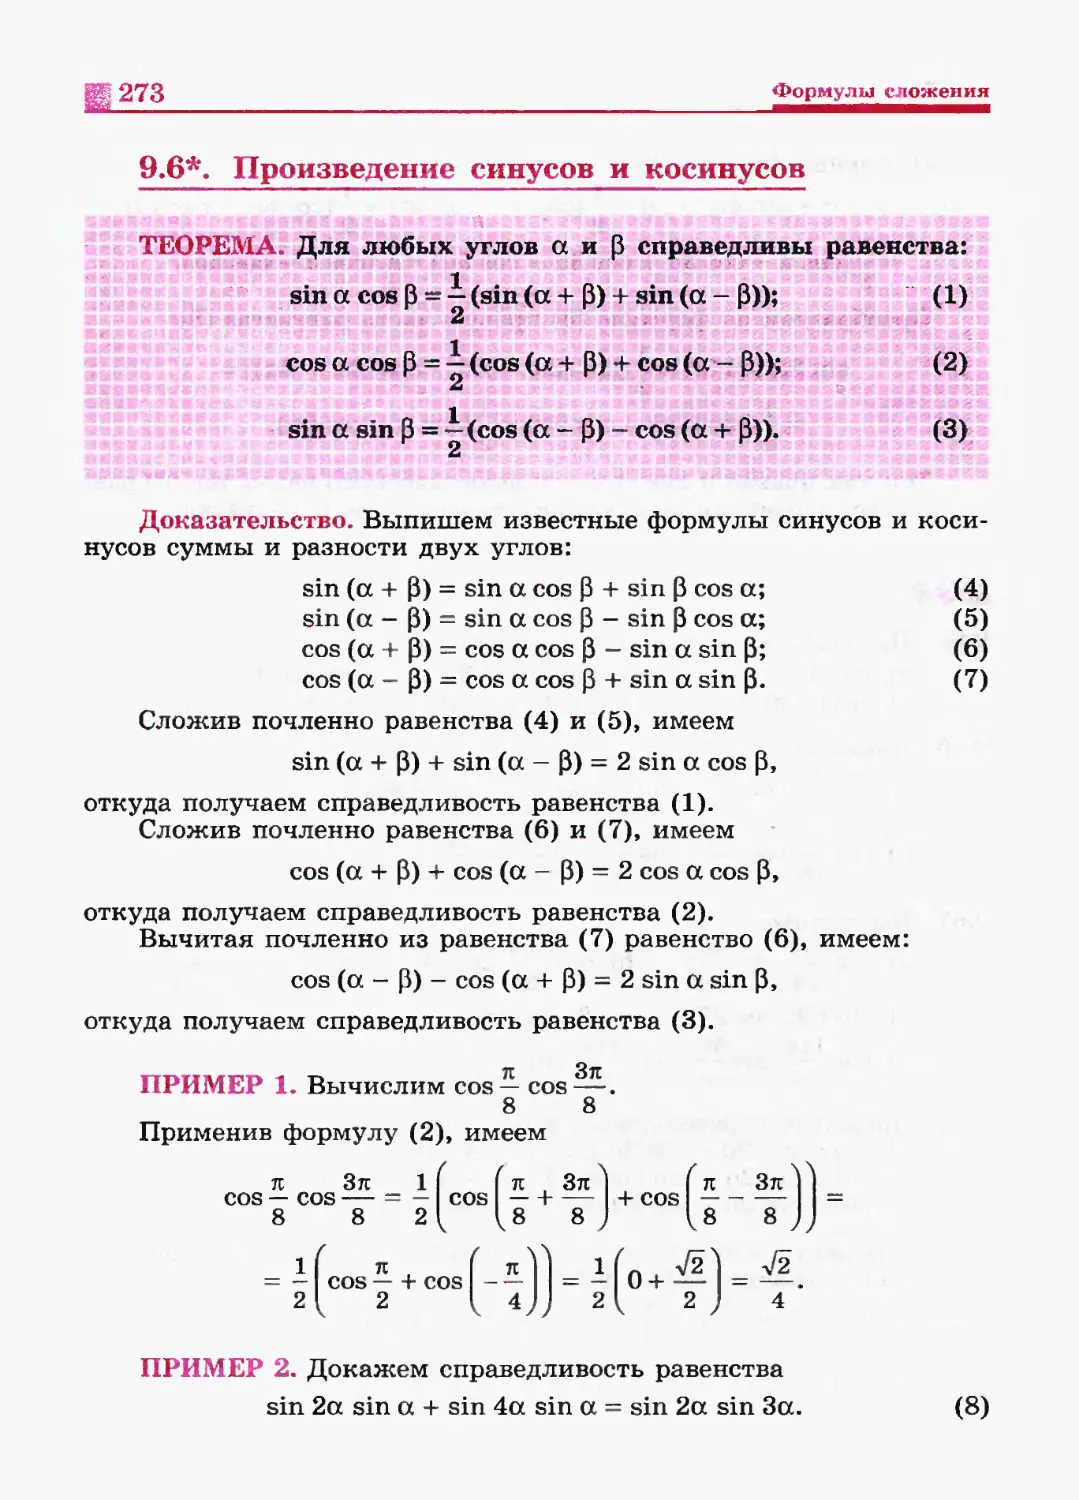 Учебник никольского 10 класс читать. Формула умножения синусов. Умножение синусов с разными углами. Формулы синусов и косинусов. Перемножение синусов.